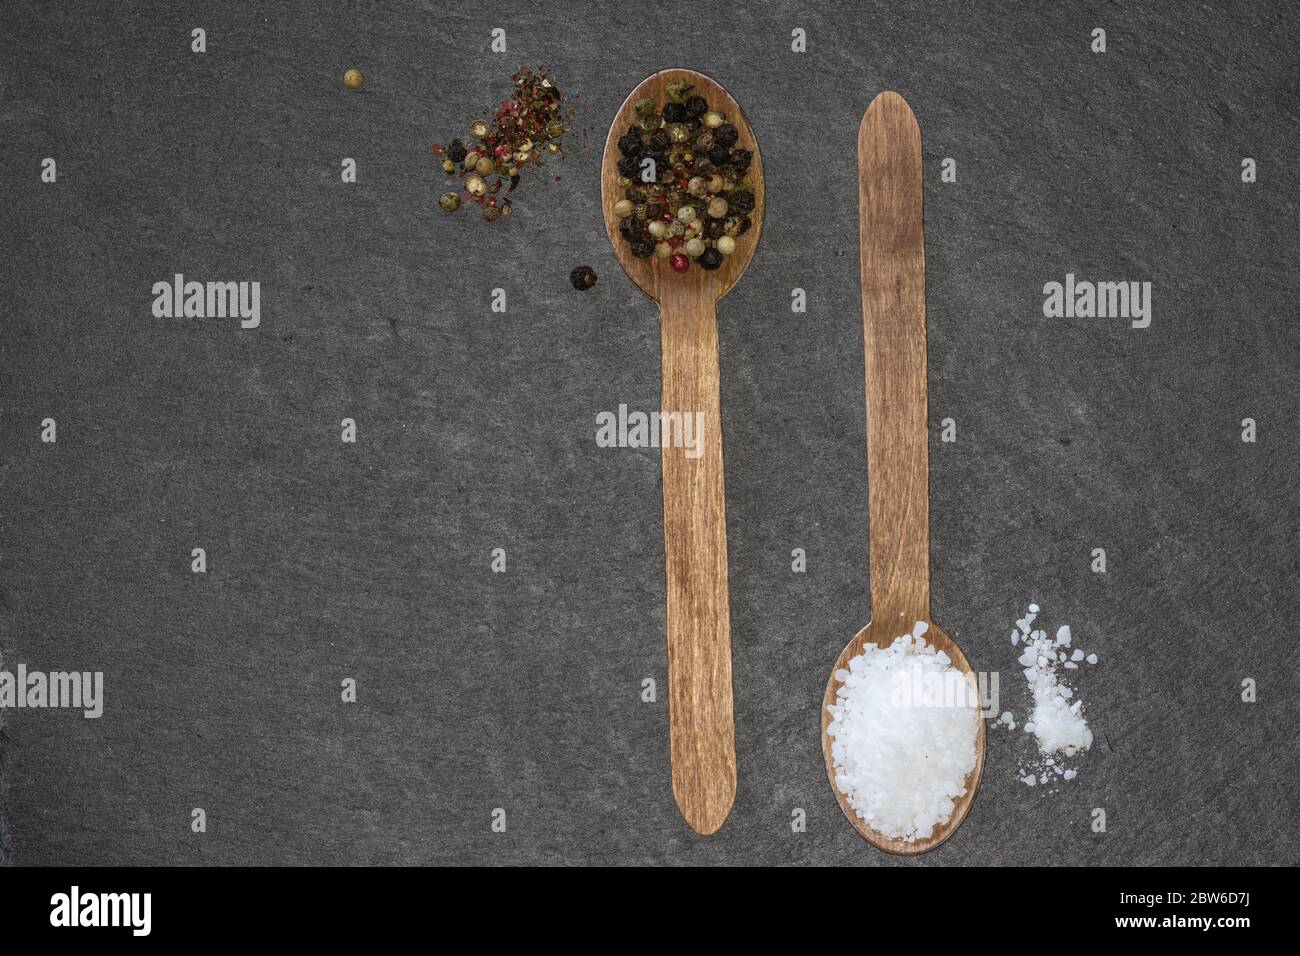 deux cuillères en bois avec sel épais et poivre coloré sur une assiette en ardoise sombre Banque D'Images